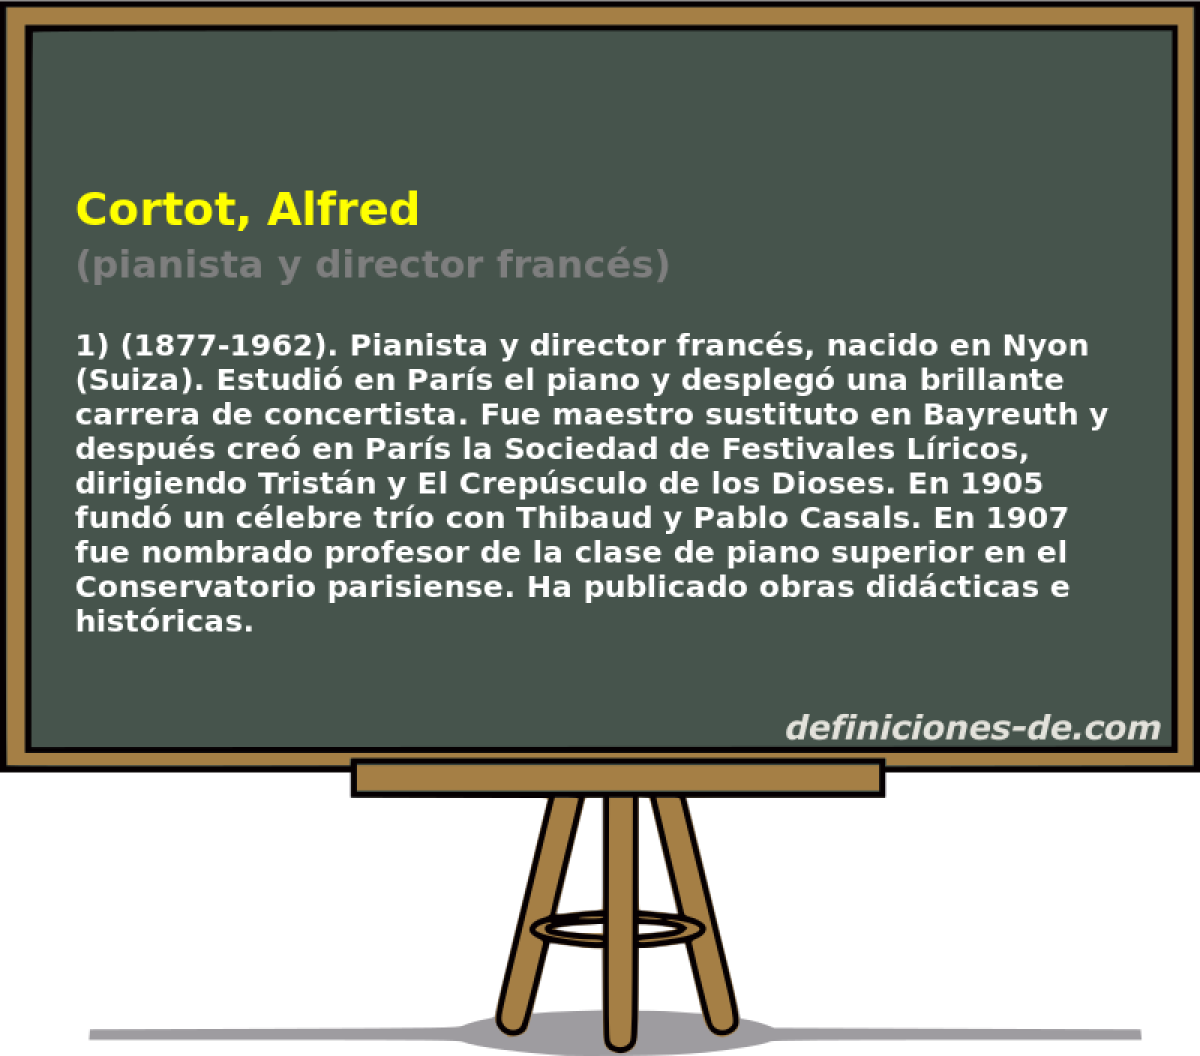 Cortot, Alfred (pianista y director francs)